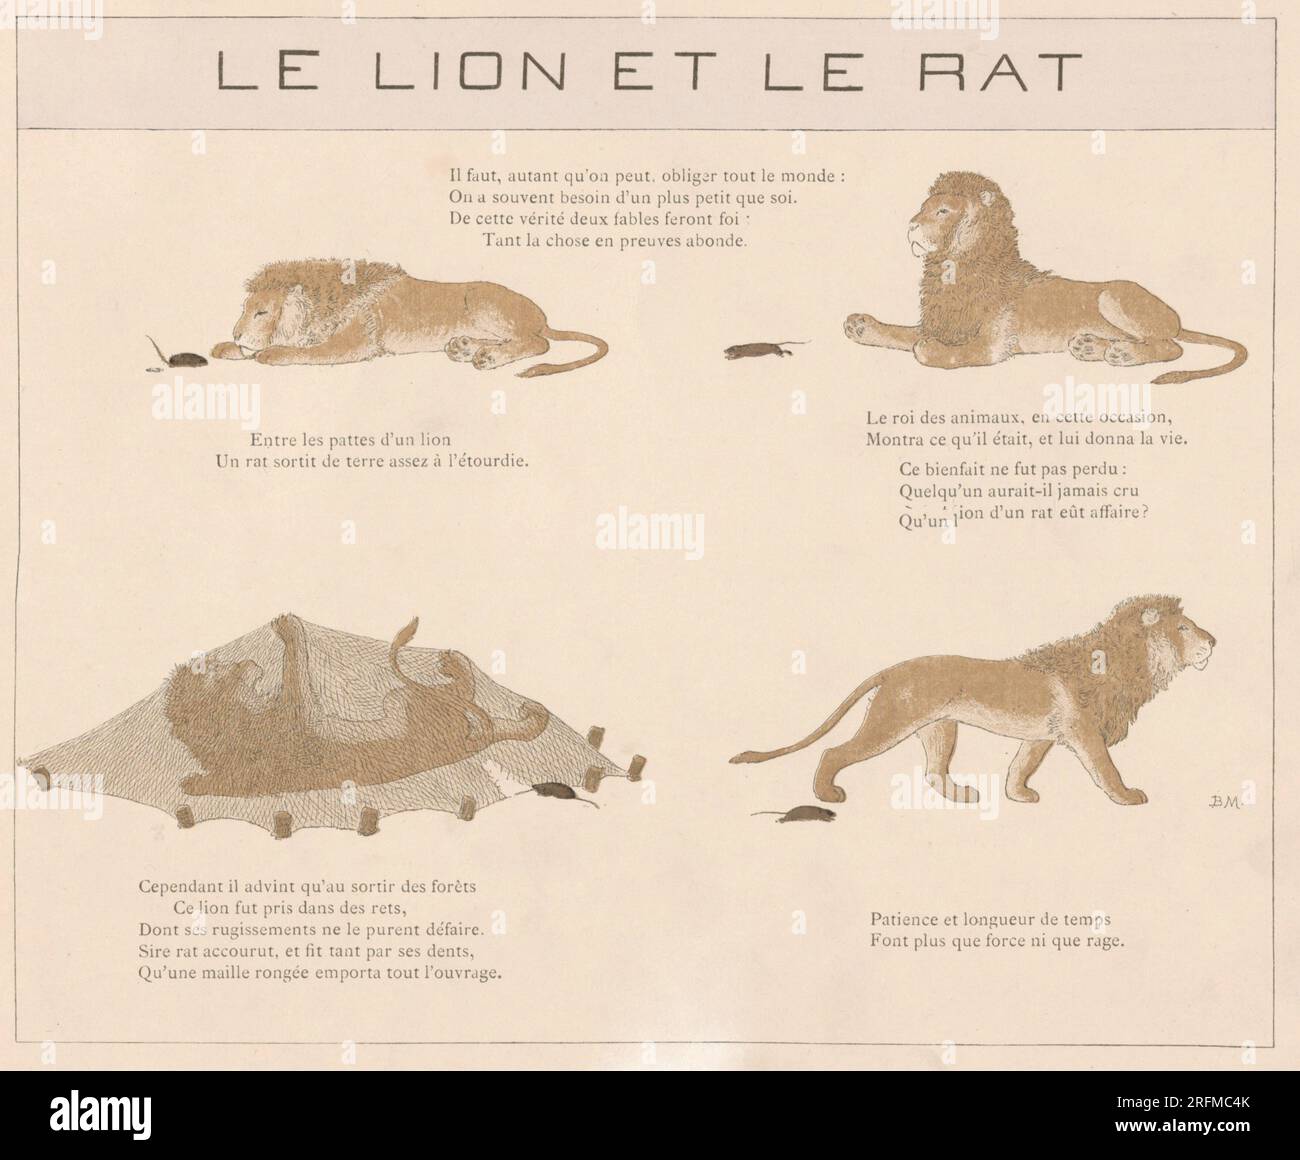 The Lion and the Rat.  Plate illustrated by Louis-Maurice Boutet de Monvel and published in 'La Fontaine: Fables choisies pour les enfants' by Plon, Nourrit et Cie (Paris), in 1888. Stock Photo